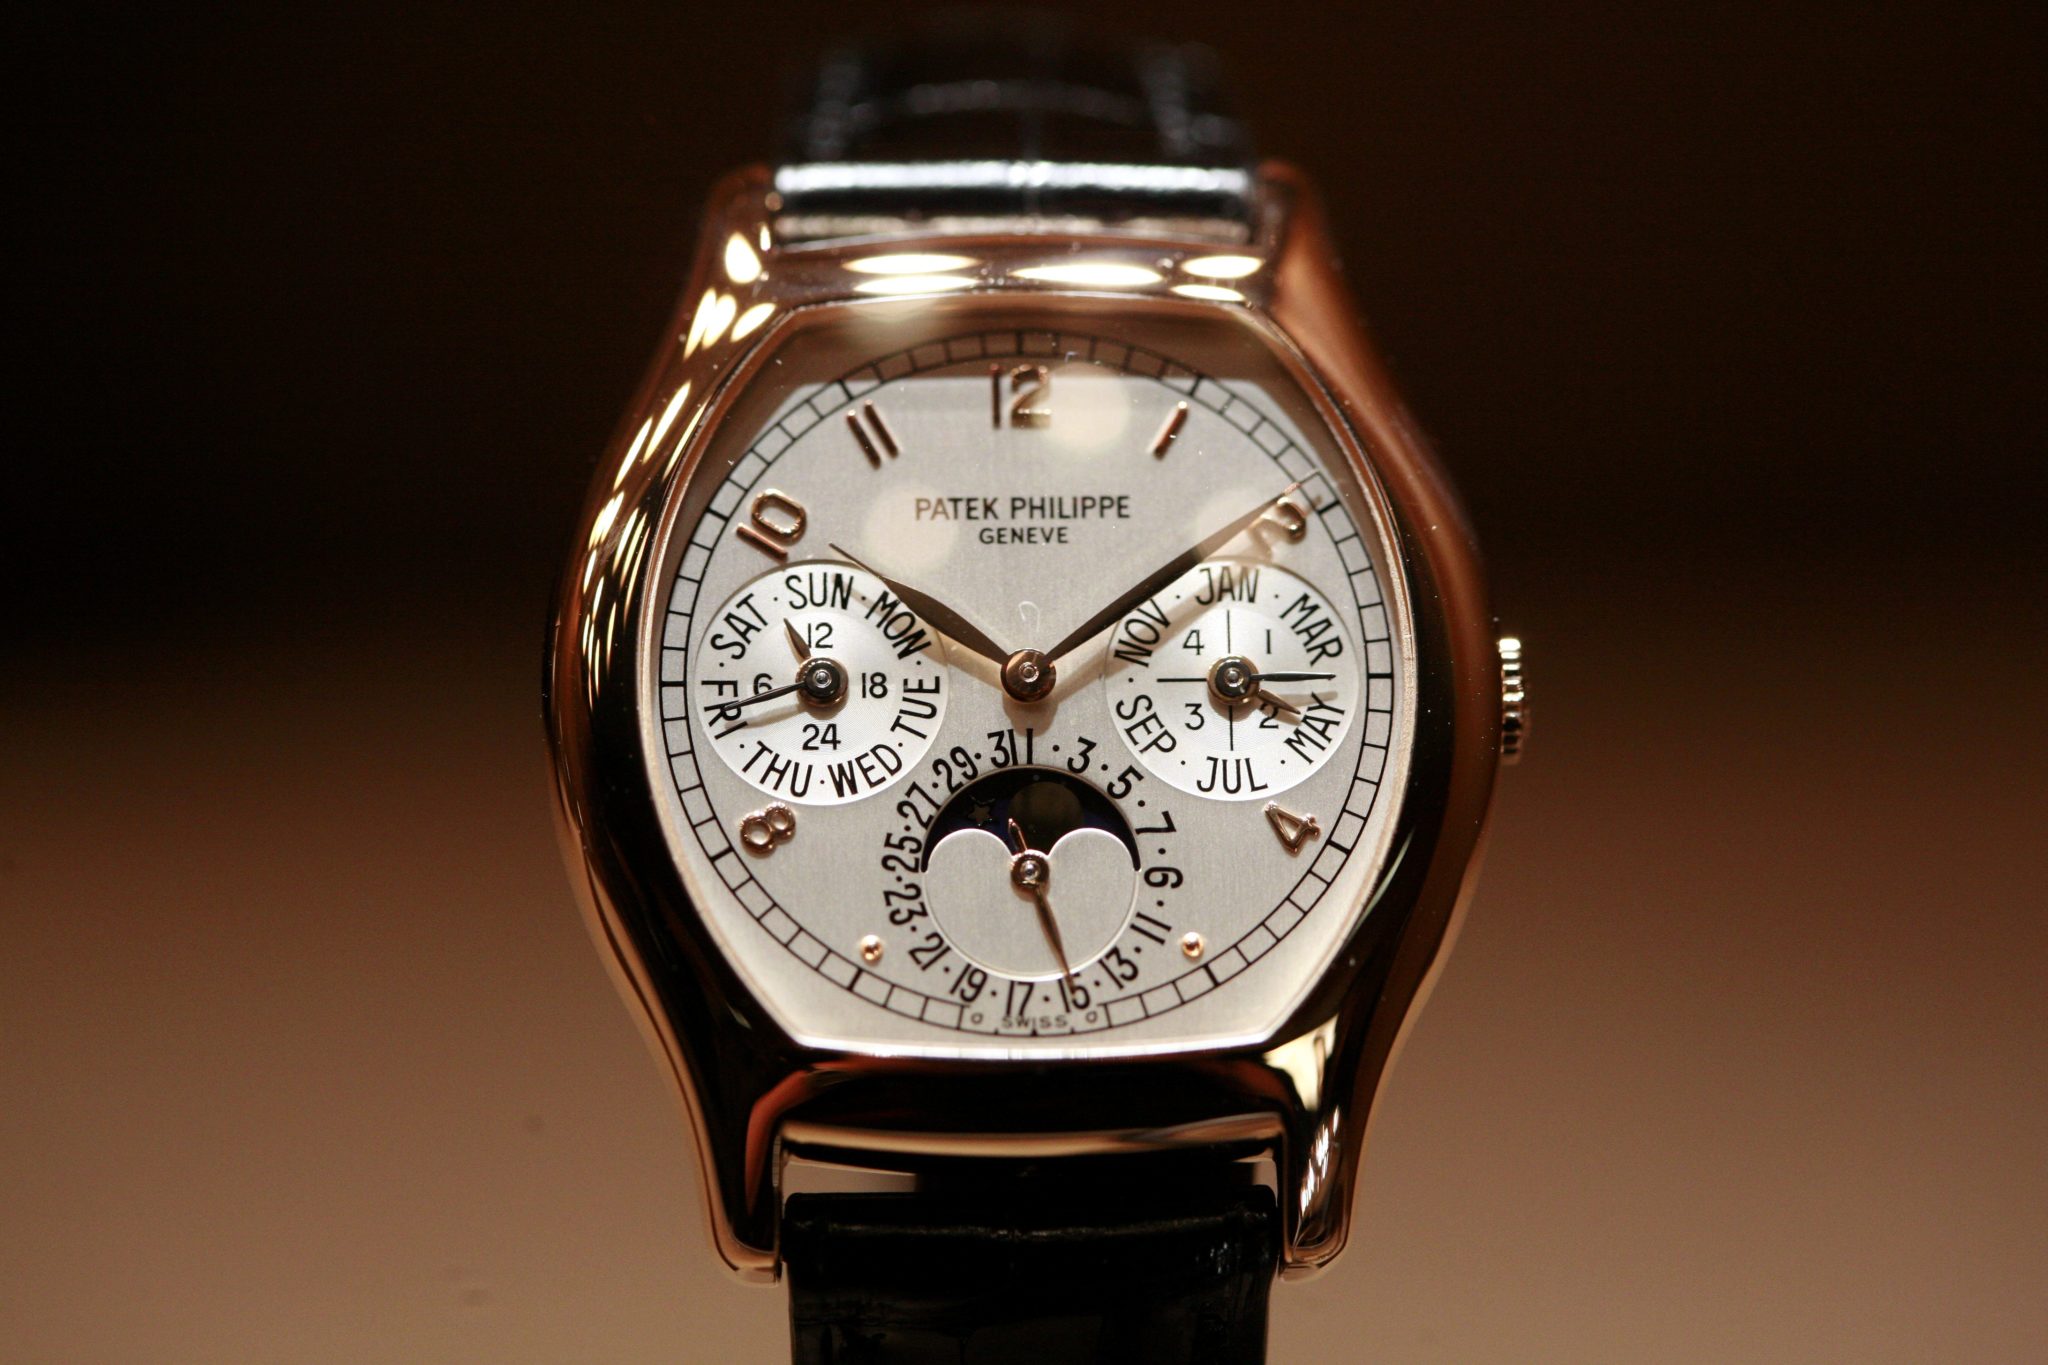 ďalší príklad jedných z najdrahších hodiniek na svete od roku 2022 - 2023  